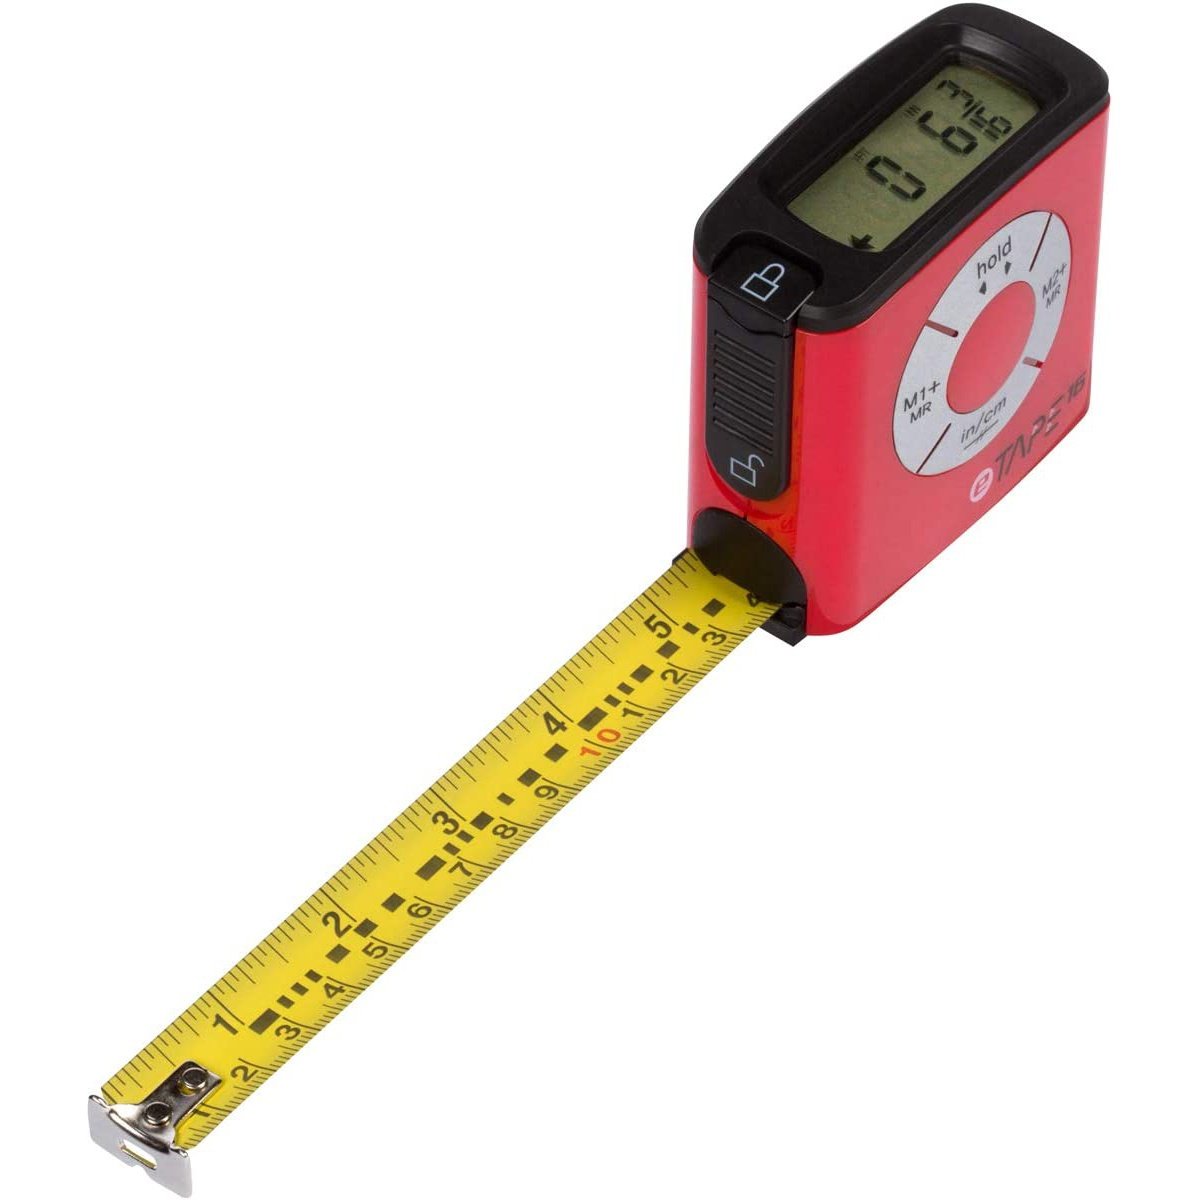 eTape16 ET16.75-db-RP Digital Tape Measure, 16 Feet, Red